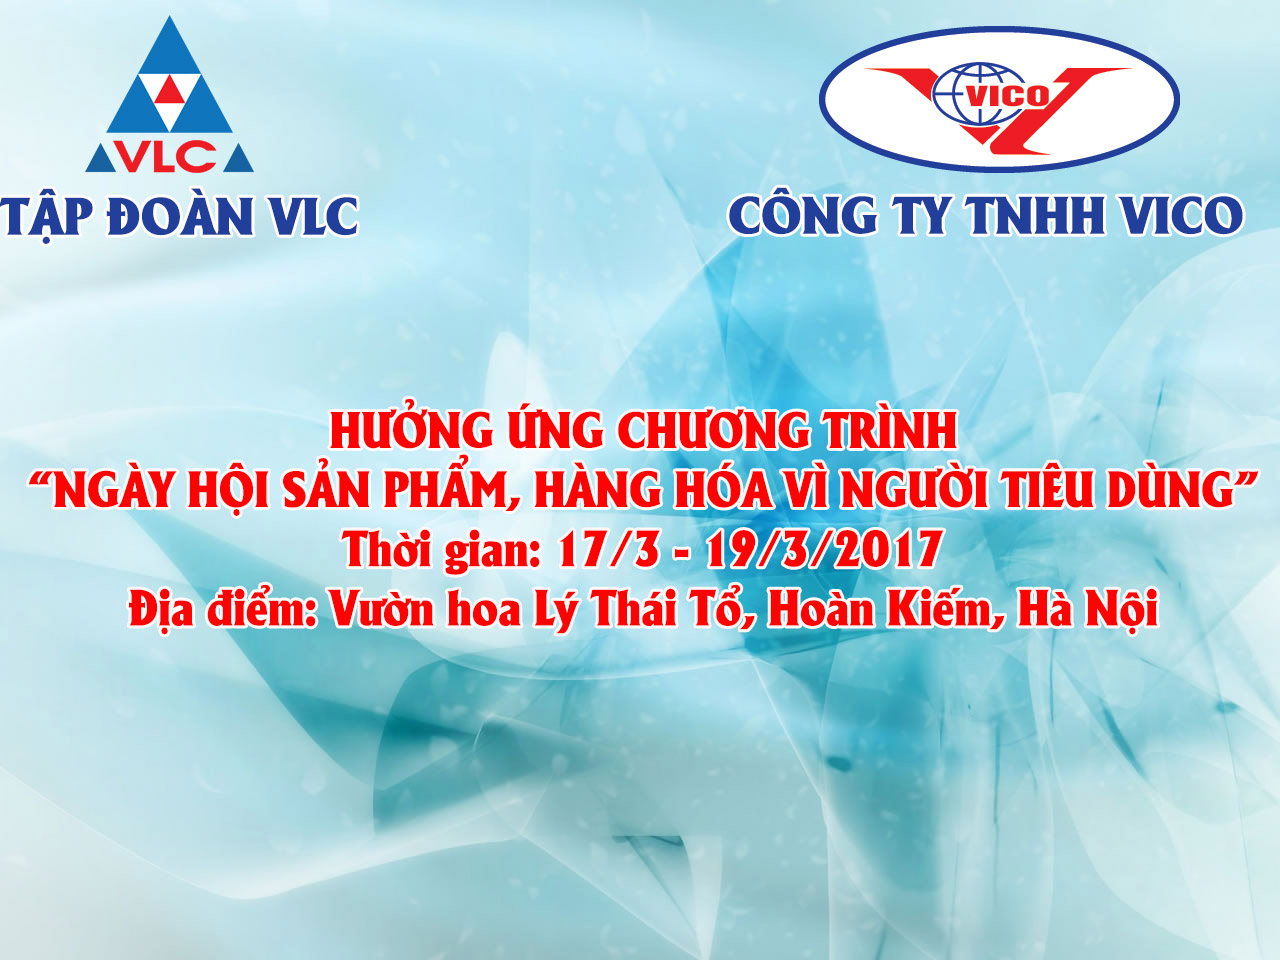 VICO huong ung "Ngay hoi san pham, hang hoa vi nguoi tieu dung"